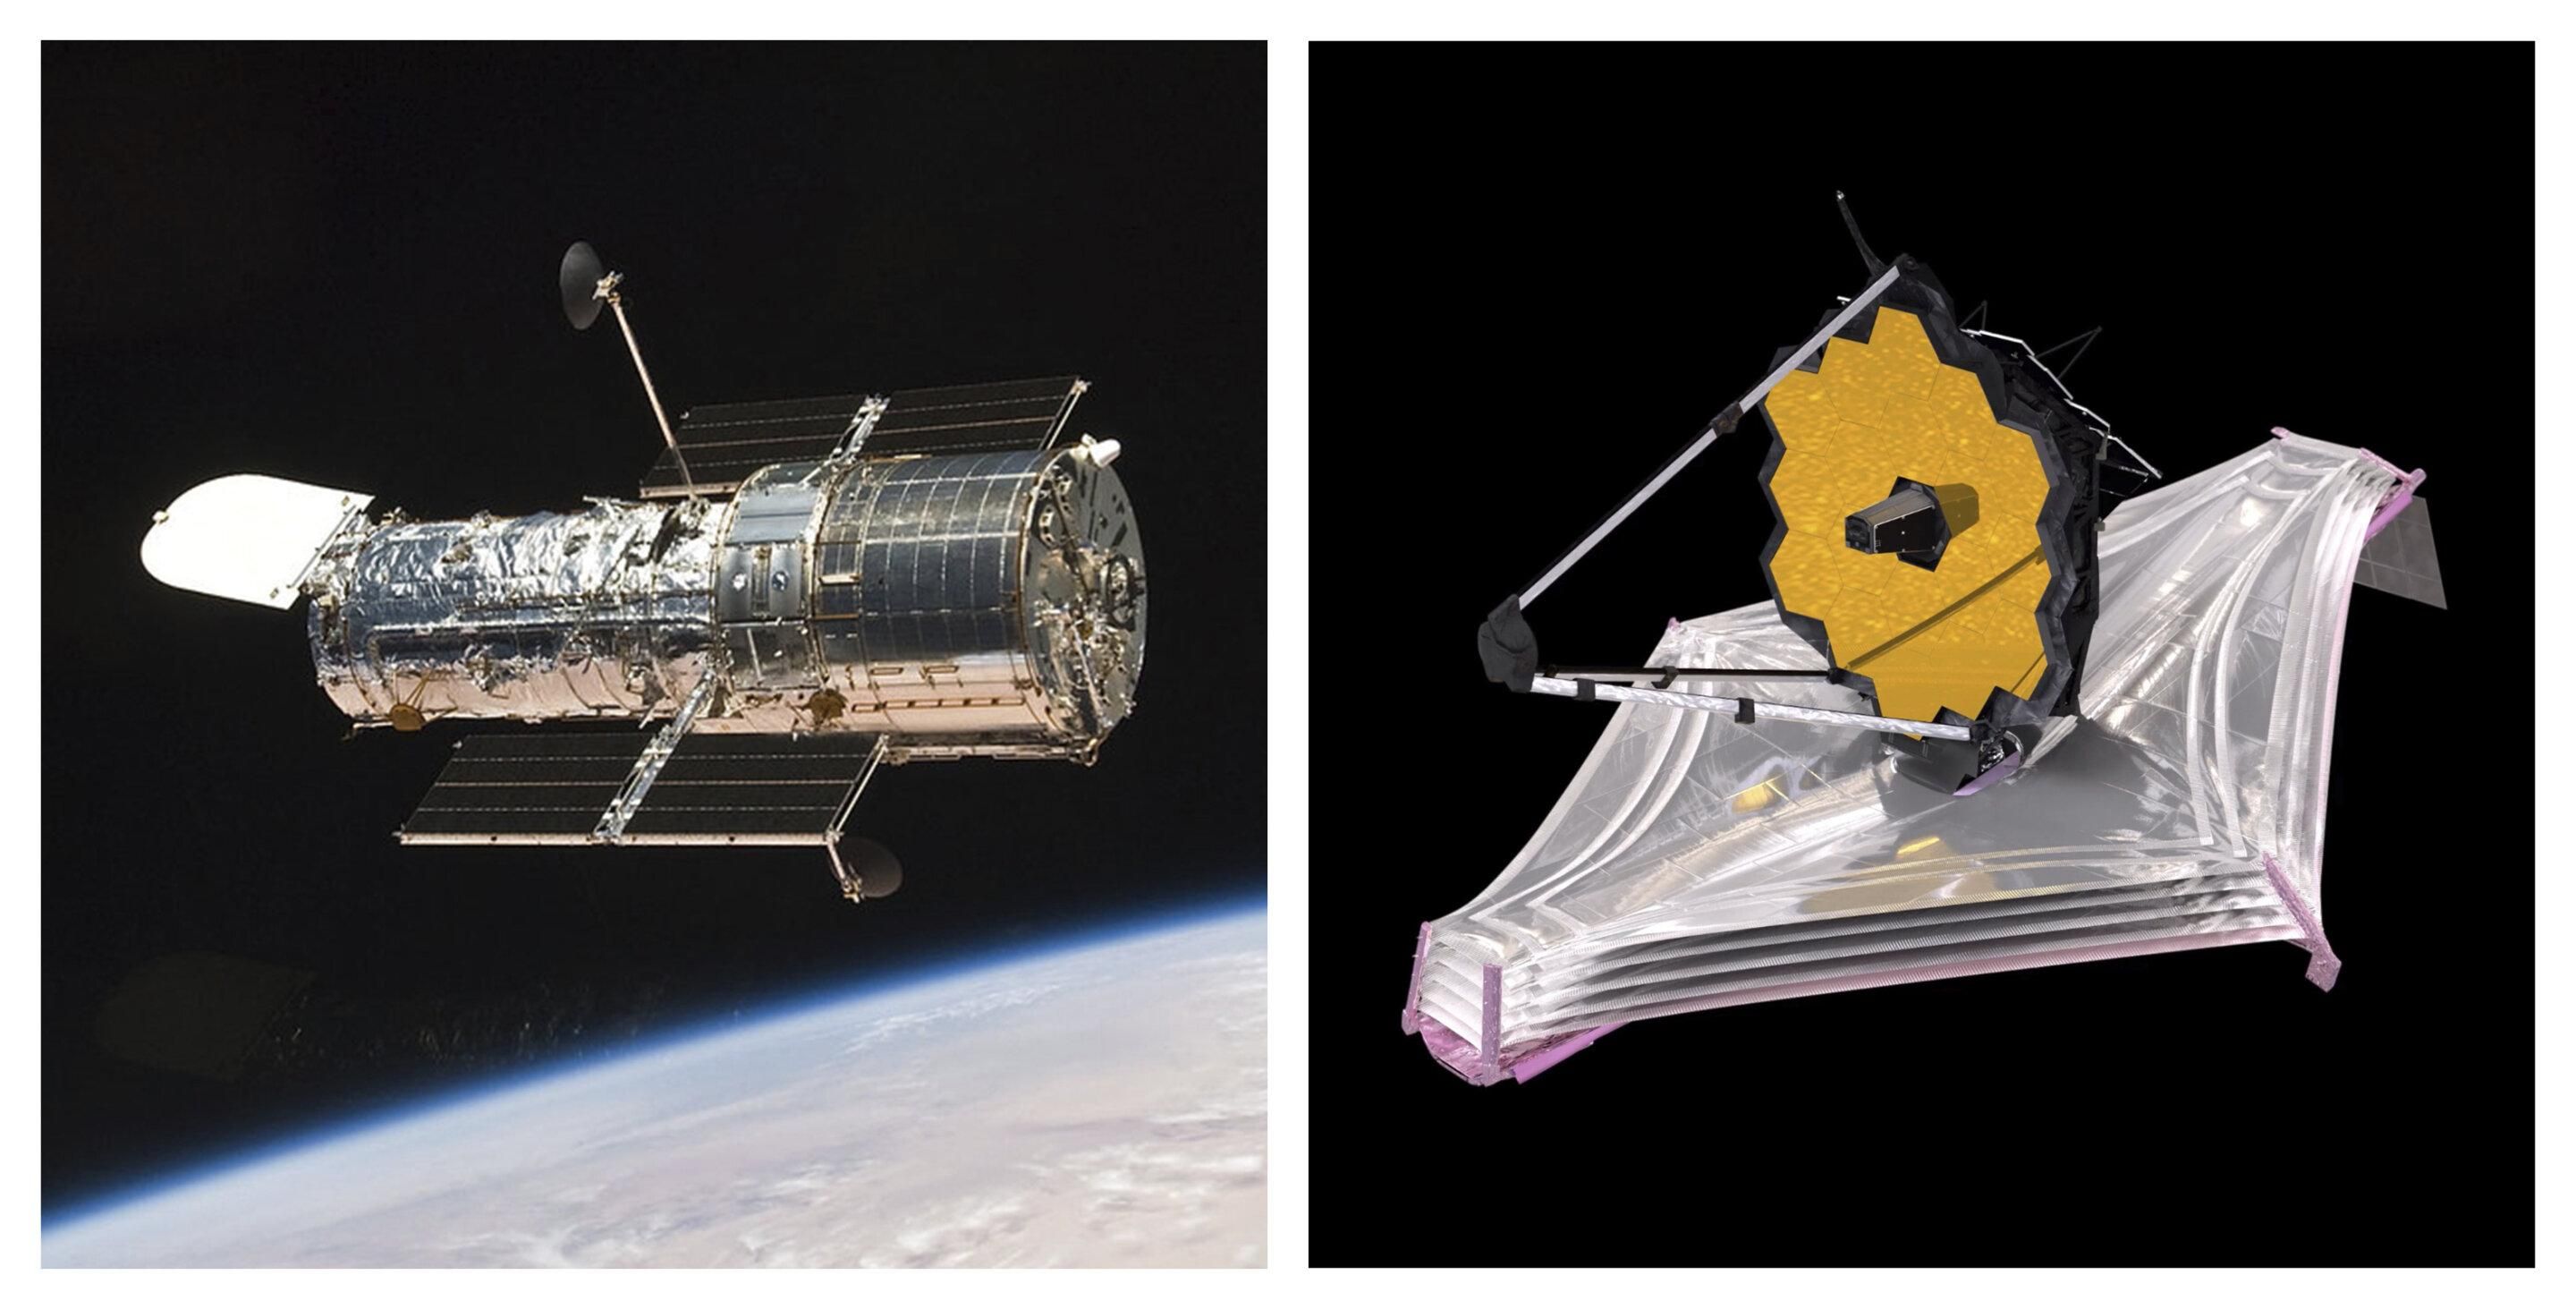 "Габбл" vs "Джеймс Вебб": що відрізняє дві космічні обсерваторії - Новини технологій - Техно